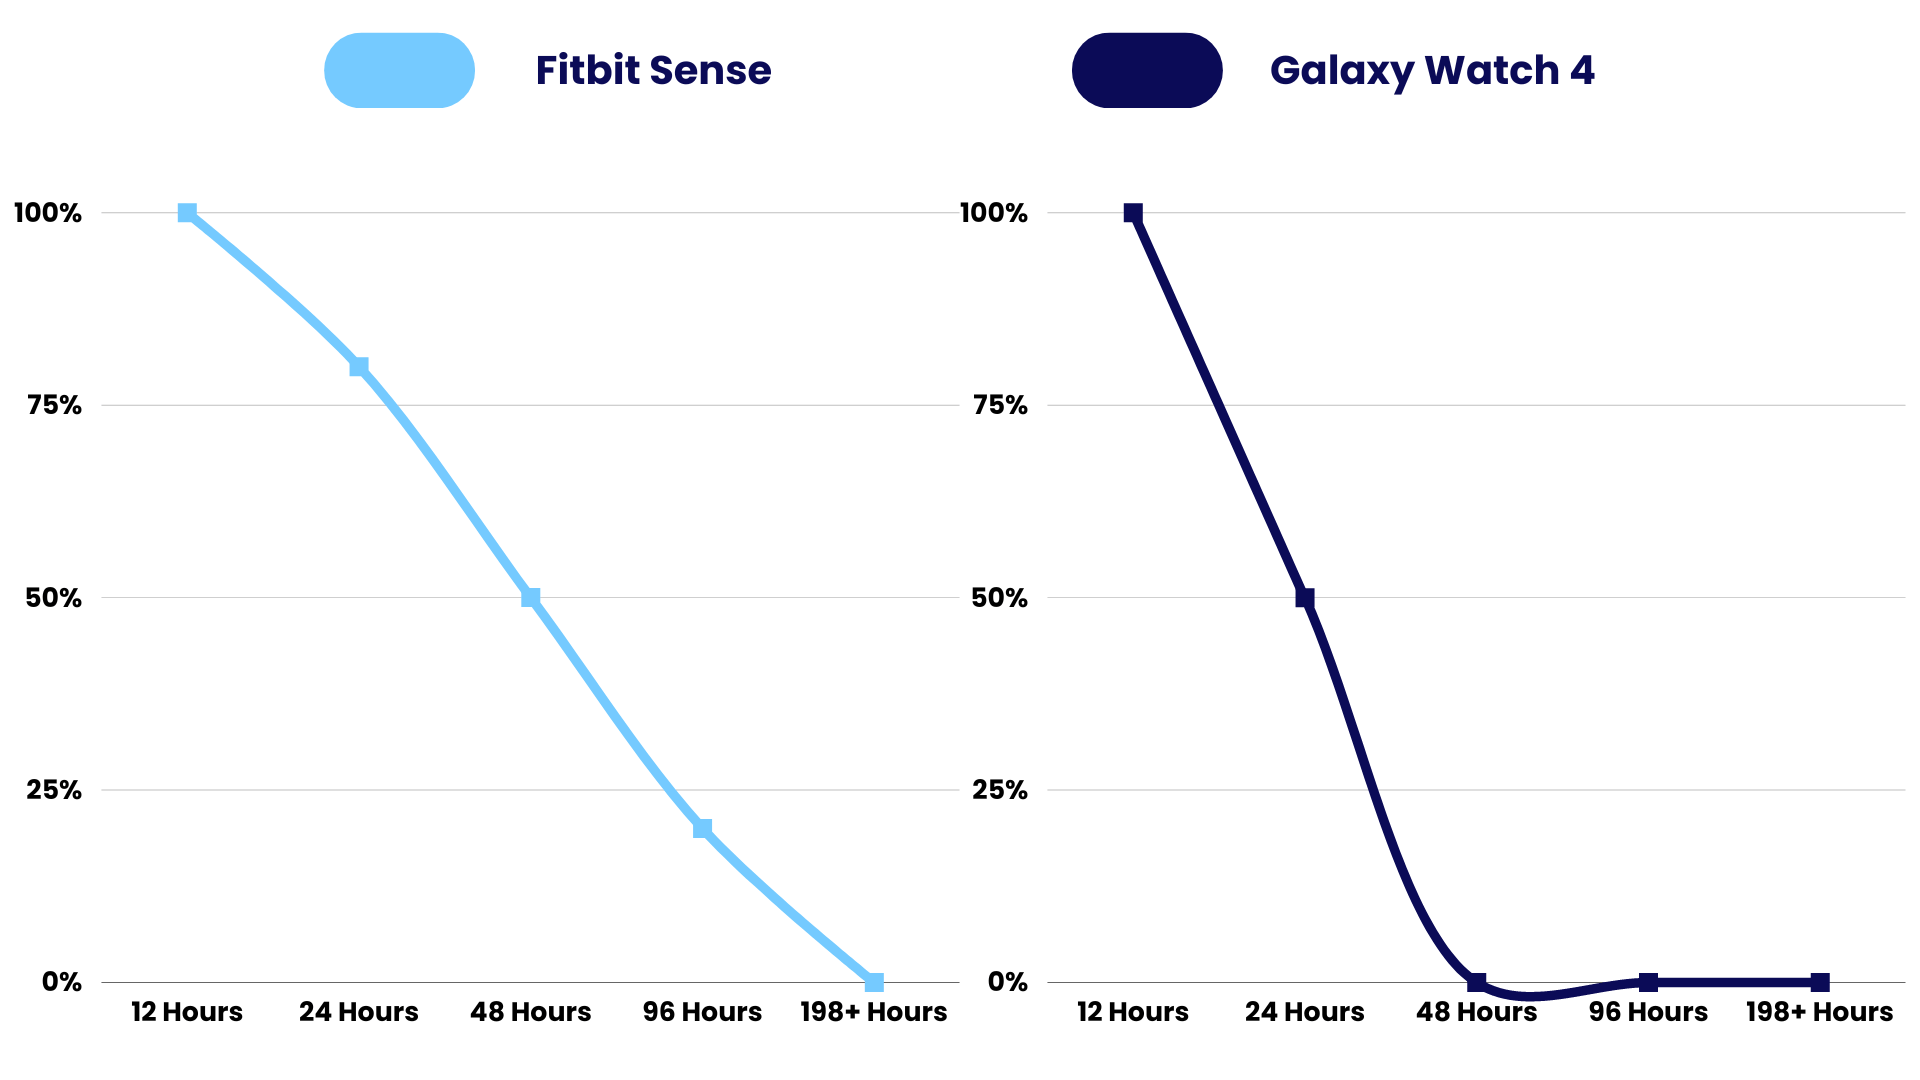 Lifespan Comparison of Fitbit Sense vs Galaxy Watch 4